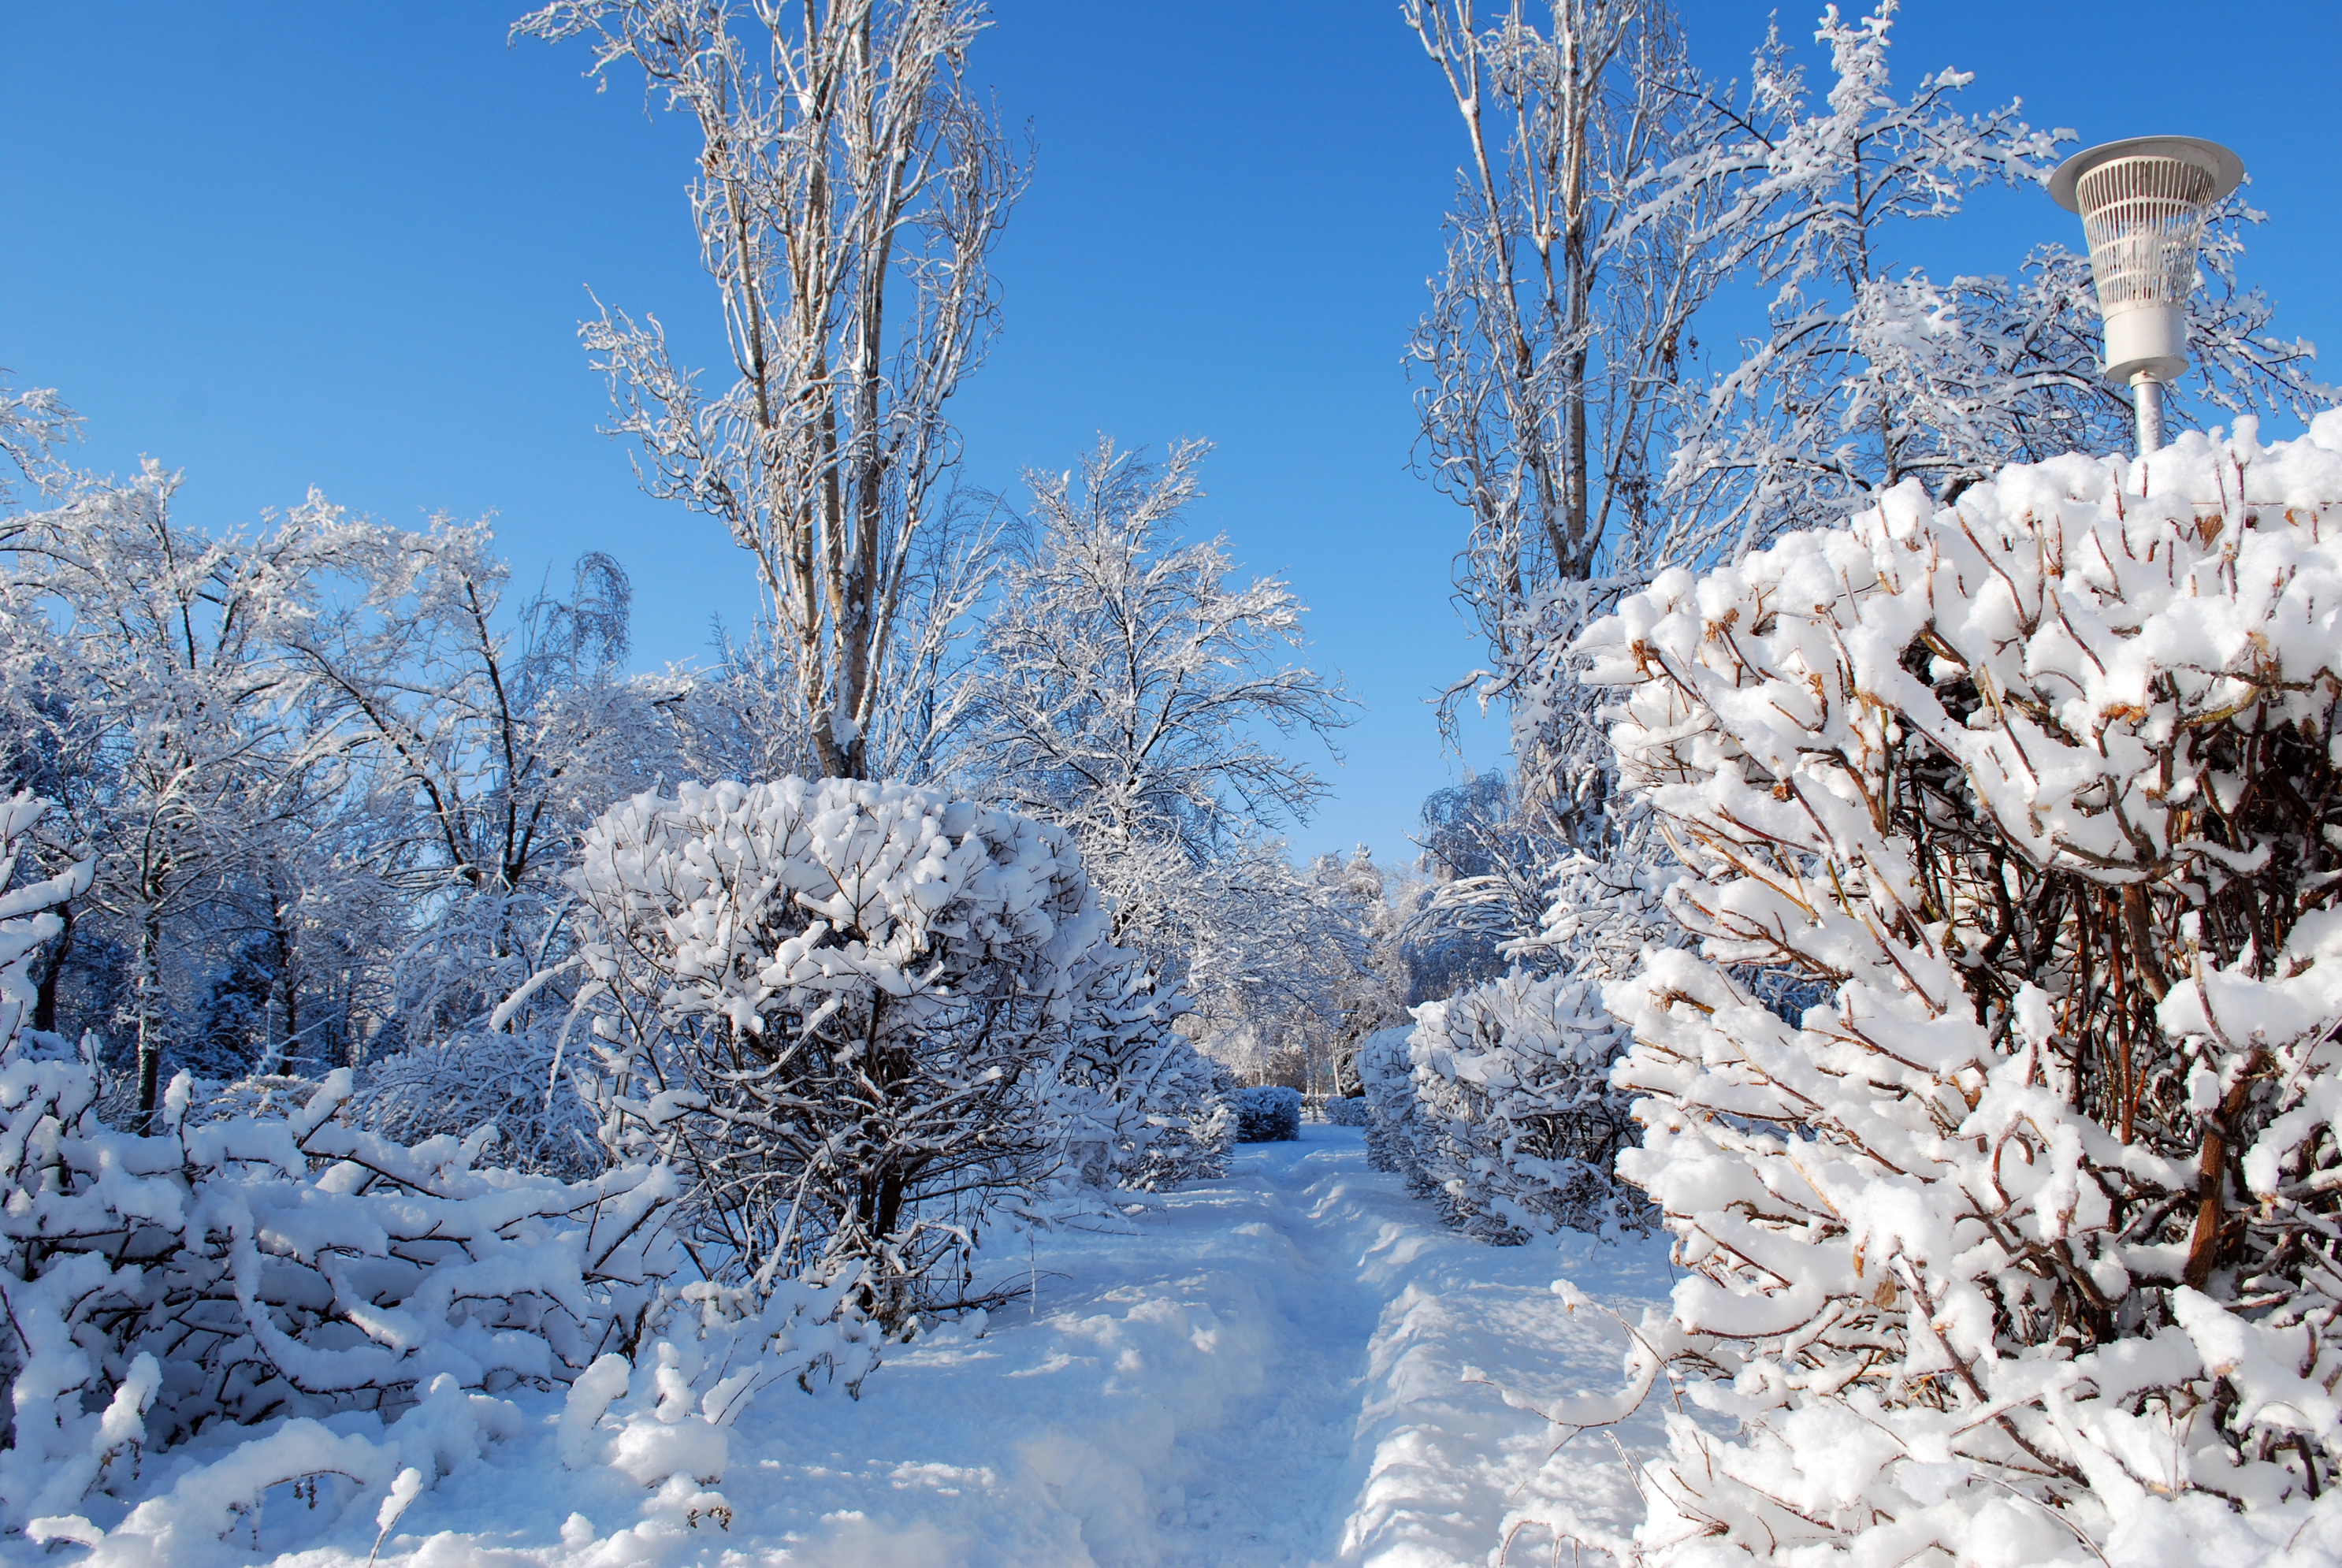 Картинка зимний период. Зима снег. Зимняя природа. Деревья в снегу. Кусты зимой.